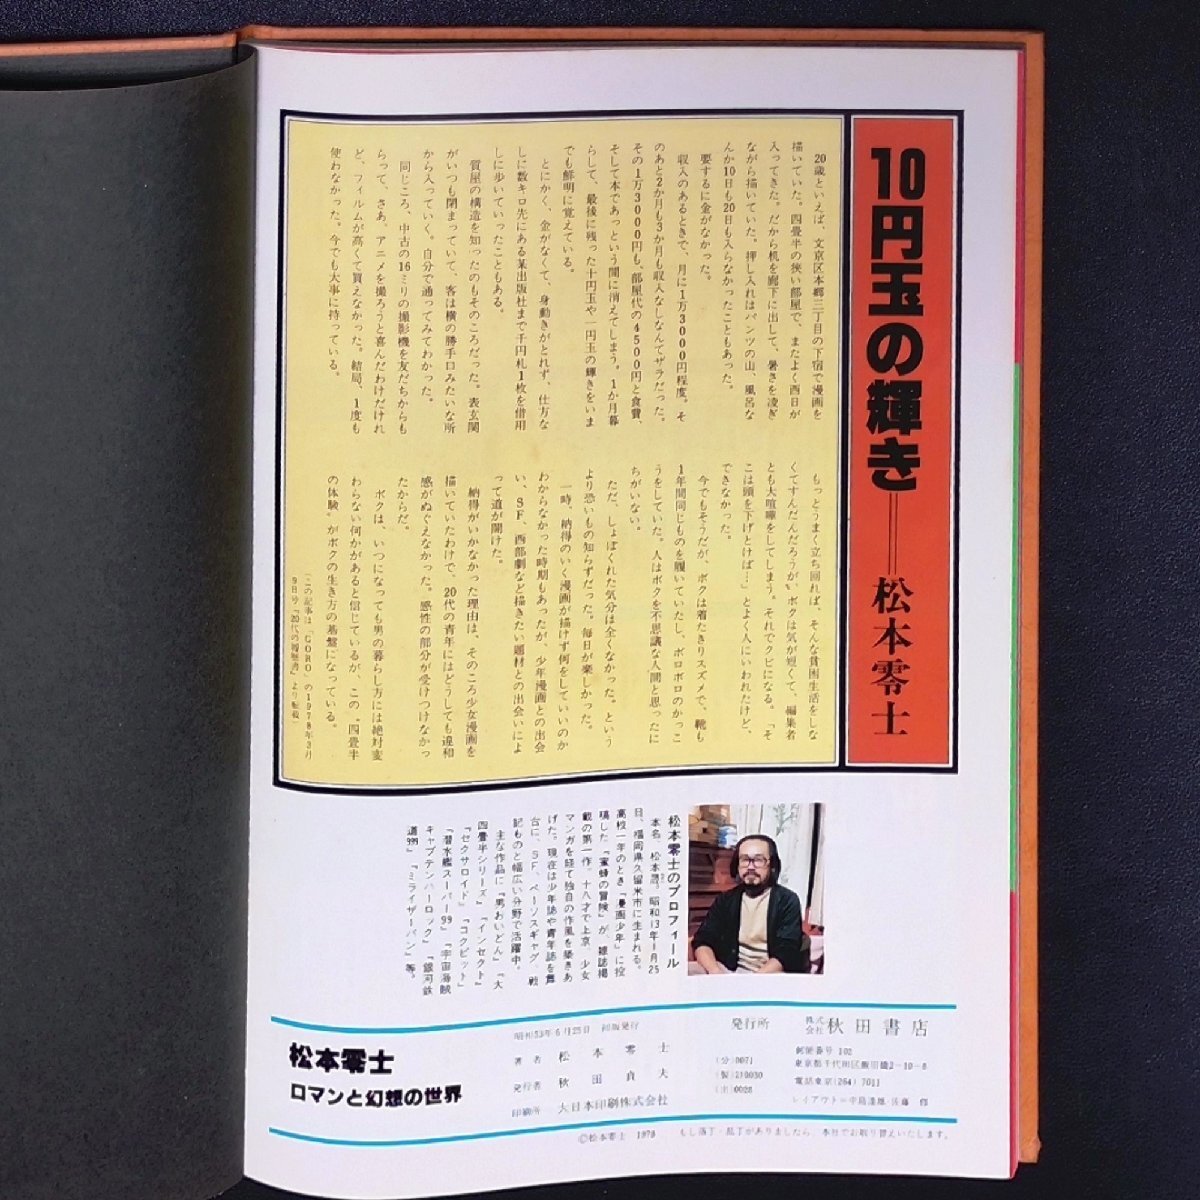  Matsumoto 0 . роман . иллюзия .. мир 1978 год Showa 53 год 6 месяц 25 день первая версия выпуск Akita книжный магазин soft покрытие нет 